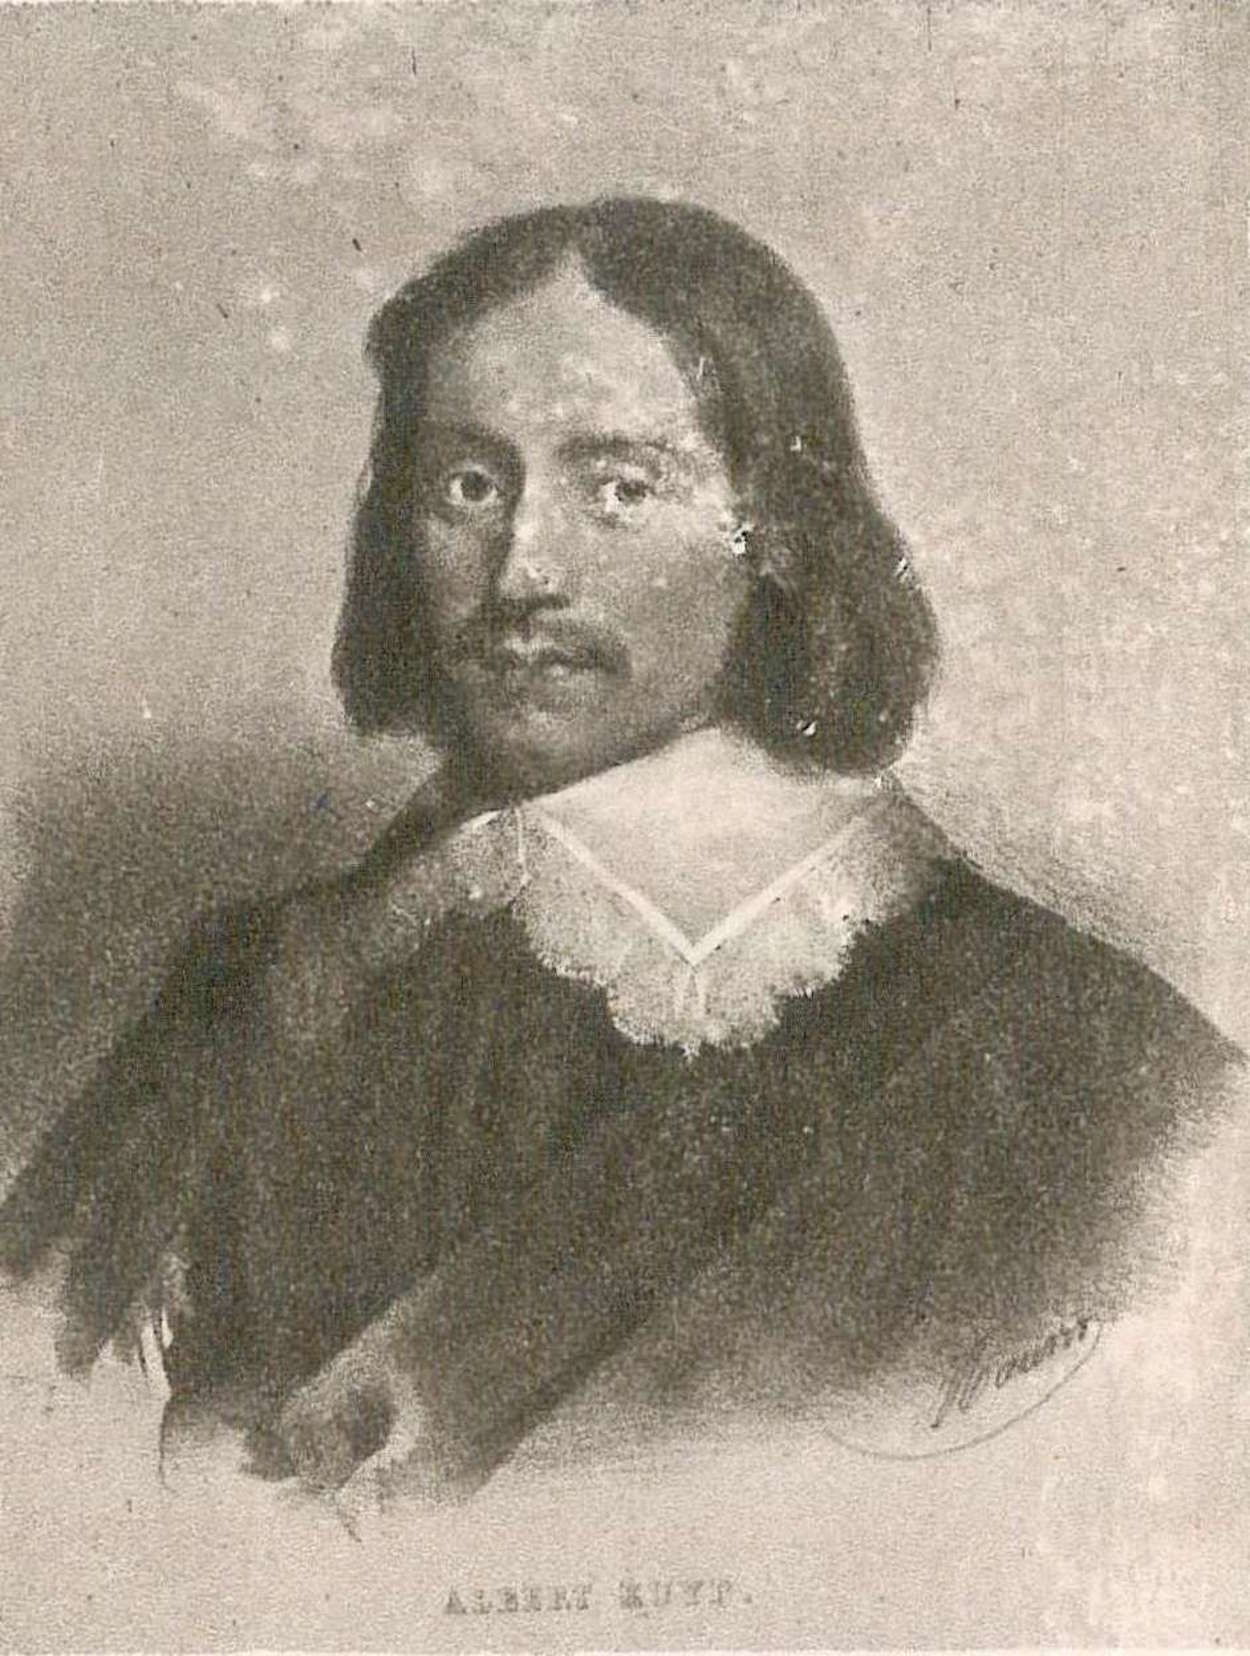 Albert Cuyp - 20 octobre 1620 - 15 novembre 1691